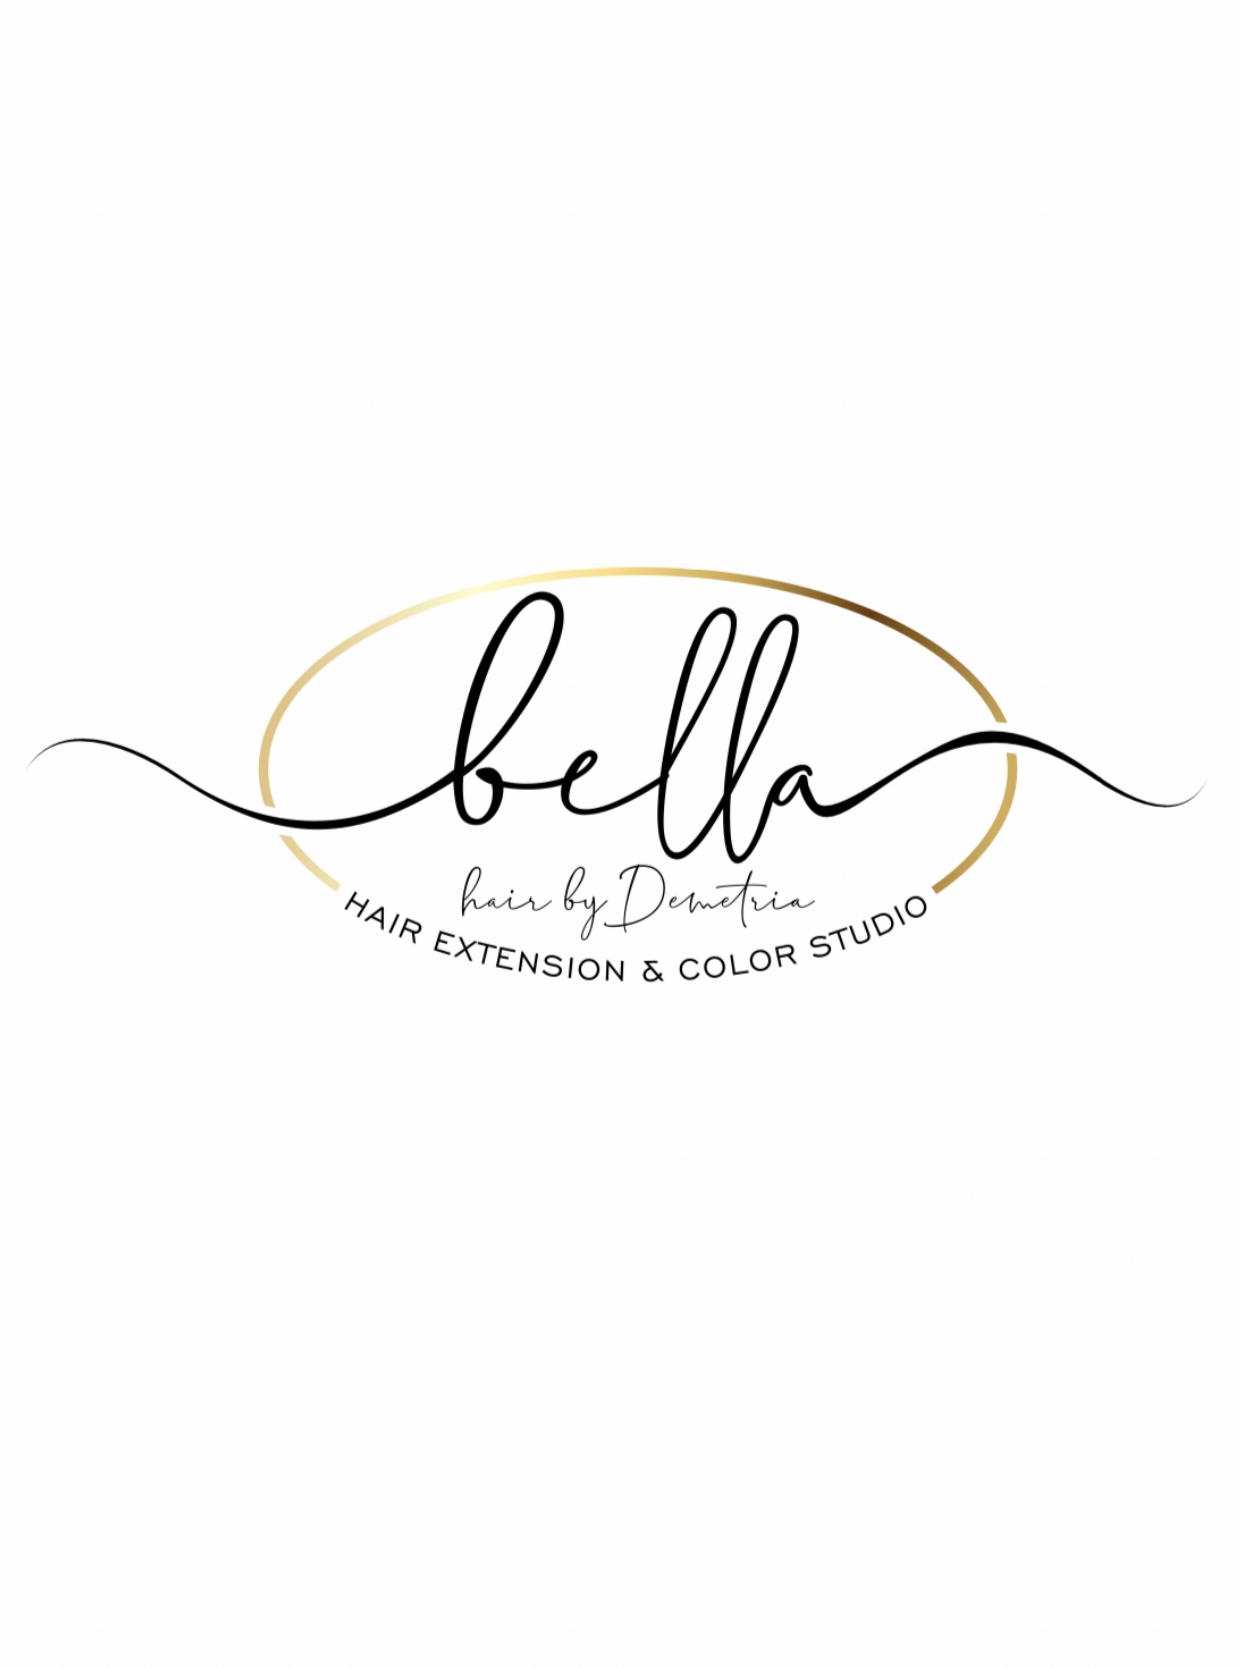 Bella Hair Extension & Color Studio